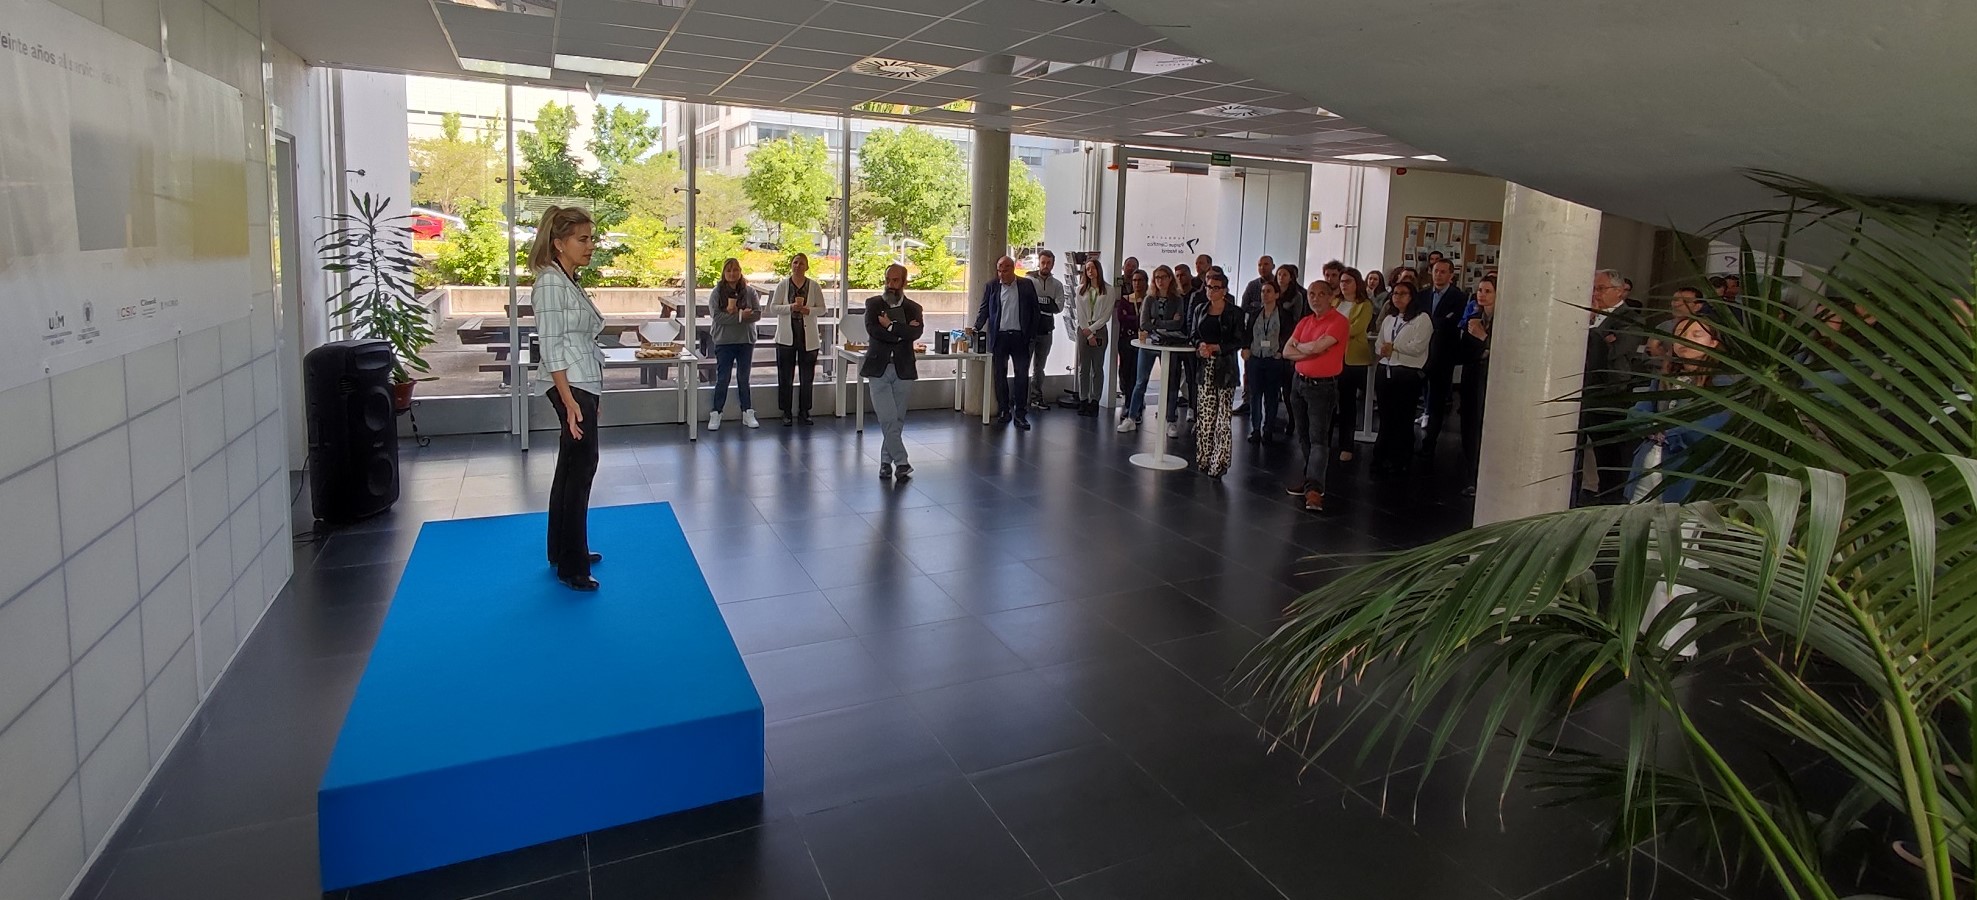 Marta del Castillo, nueva directora de la FPCM, se presenta ante la comunidad del Parque Científico de Madrid.